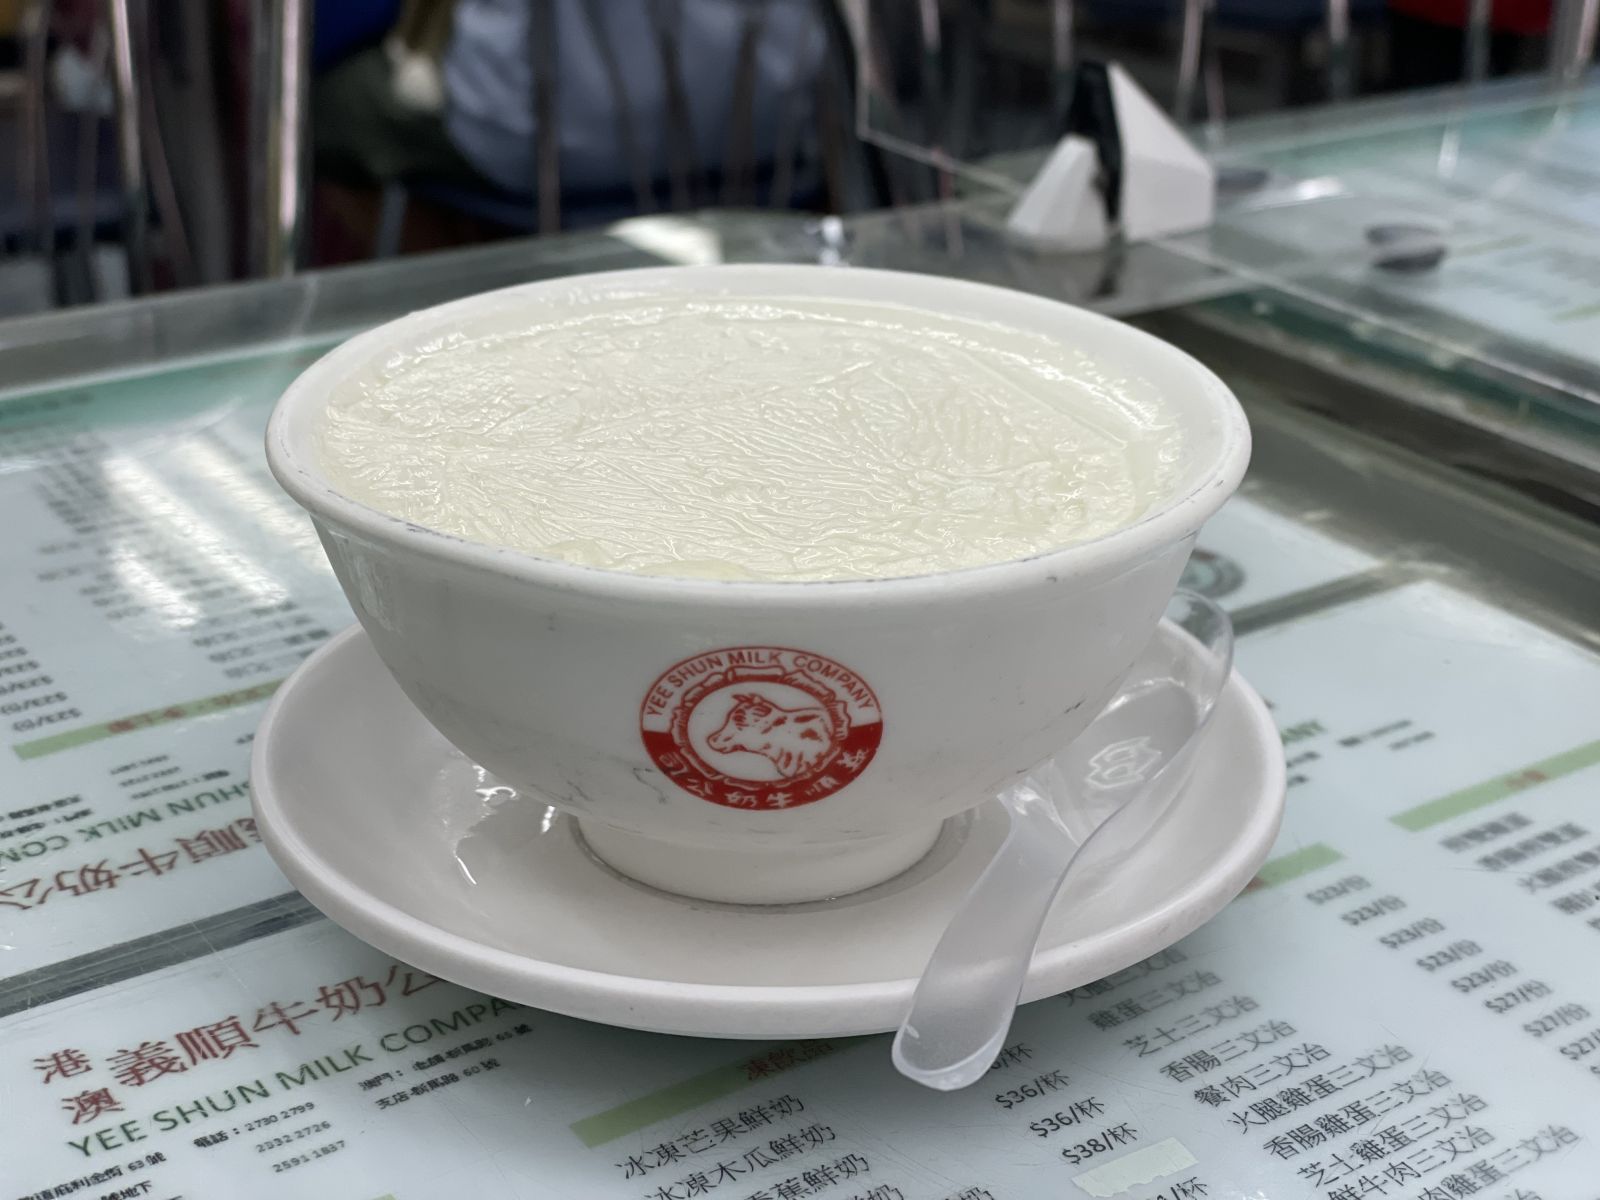 Steamed Milk (雙皮燉奶) - Can't wait to taste!